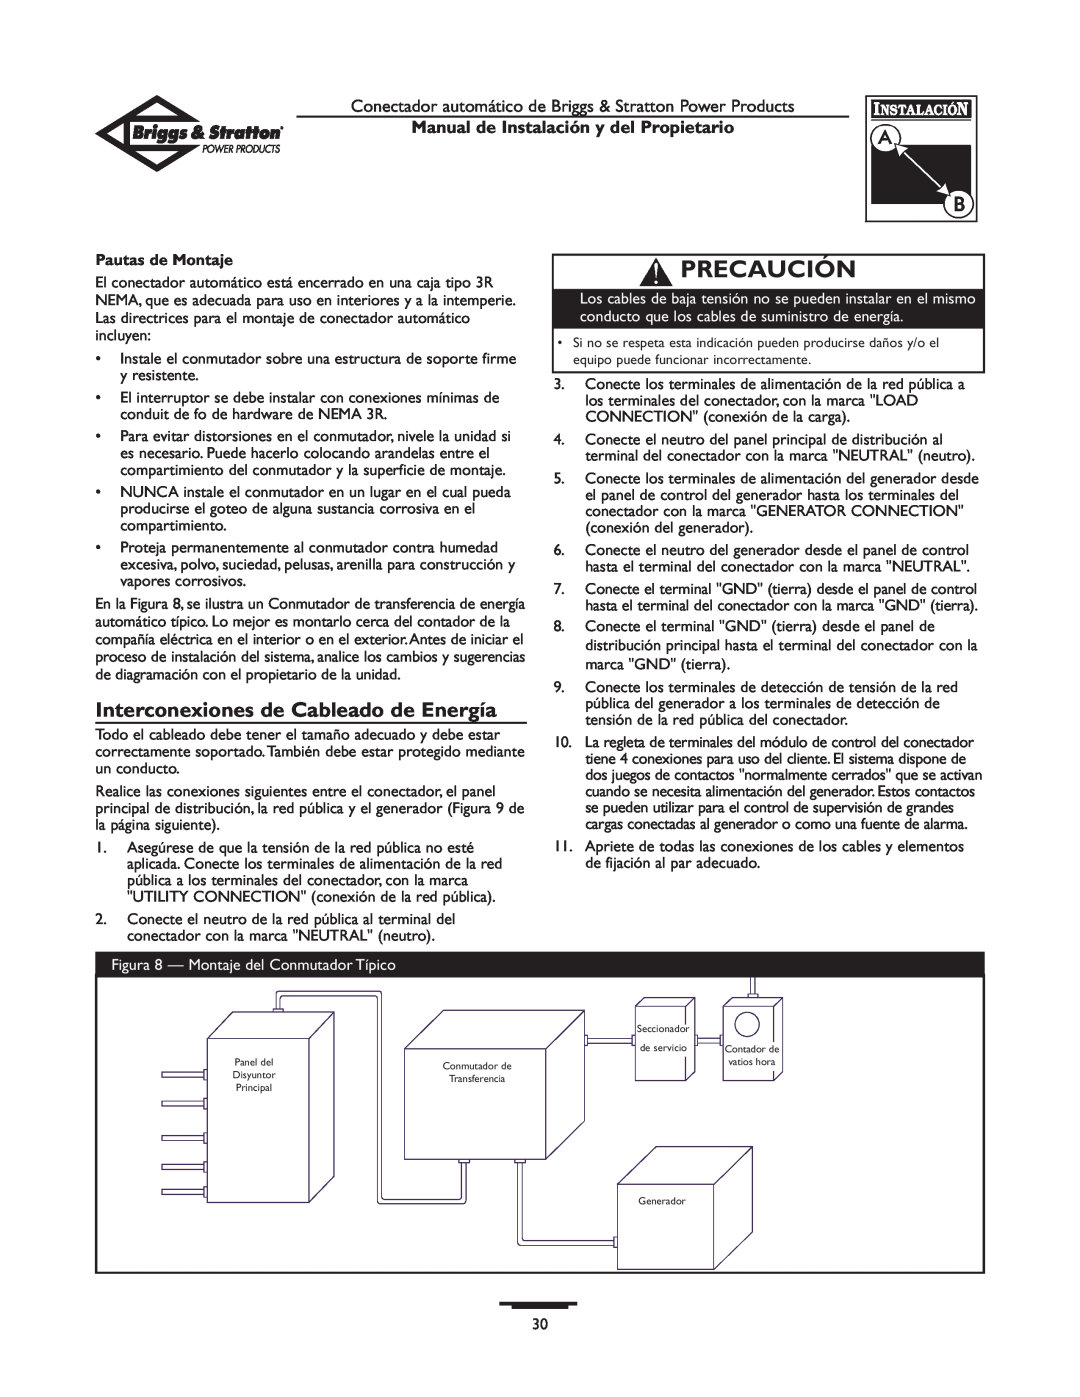 Briggs & Stratton 01814-0 Interconexiones de Cableado de Energía, Precaución, Manual de Instalación y del Propietario 